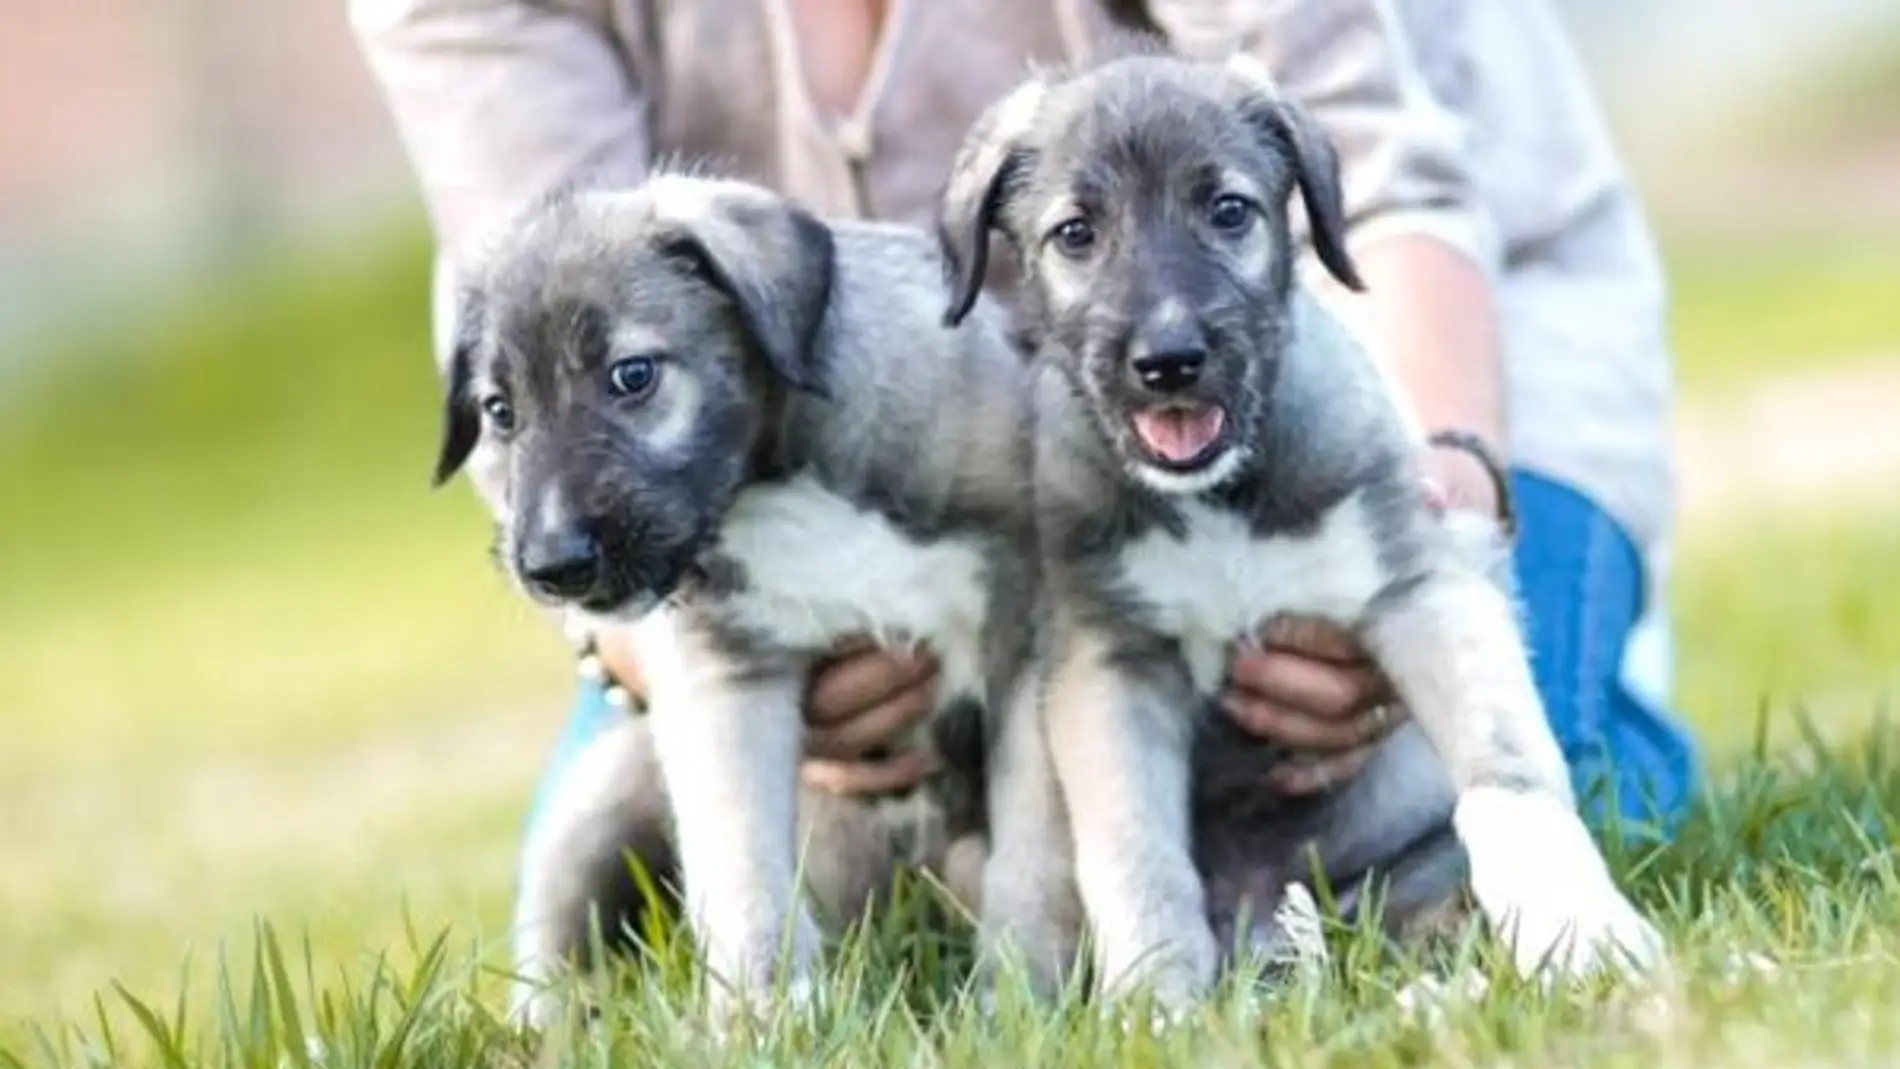 Dos cachorros de perro - Imagen de archivo